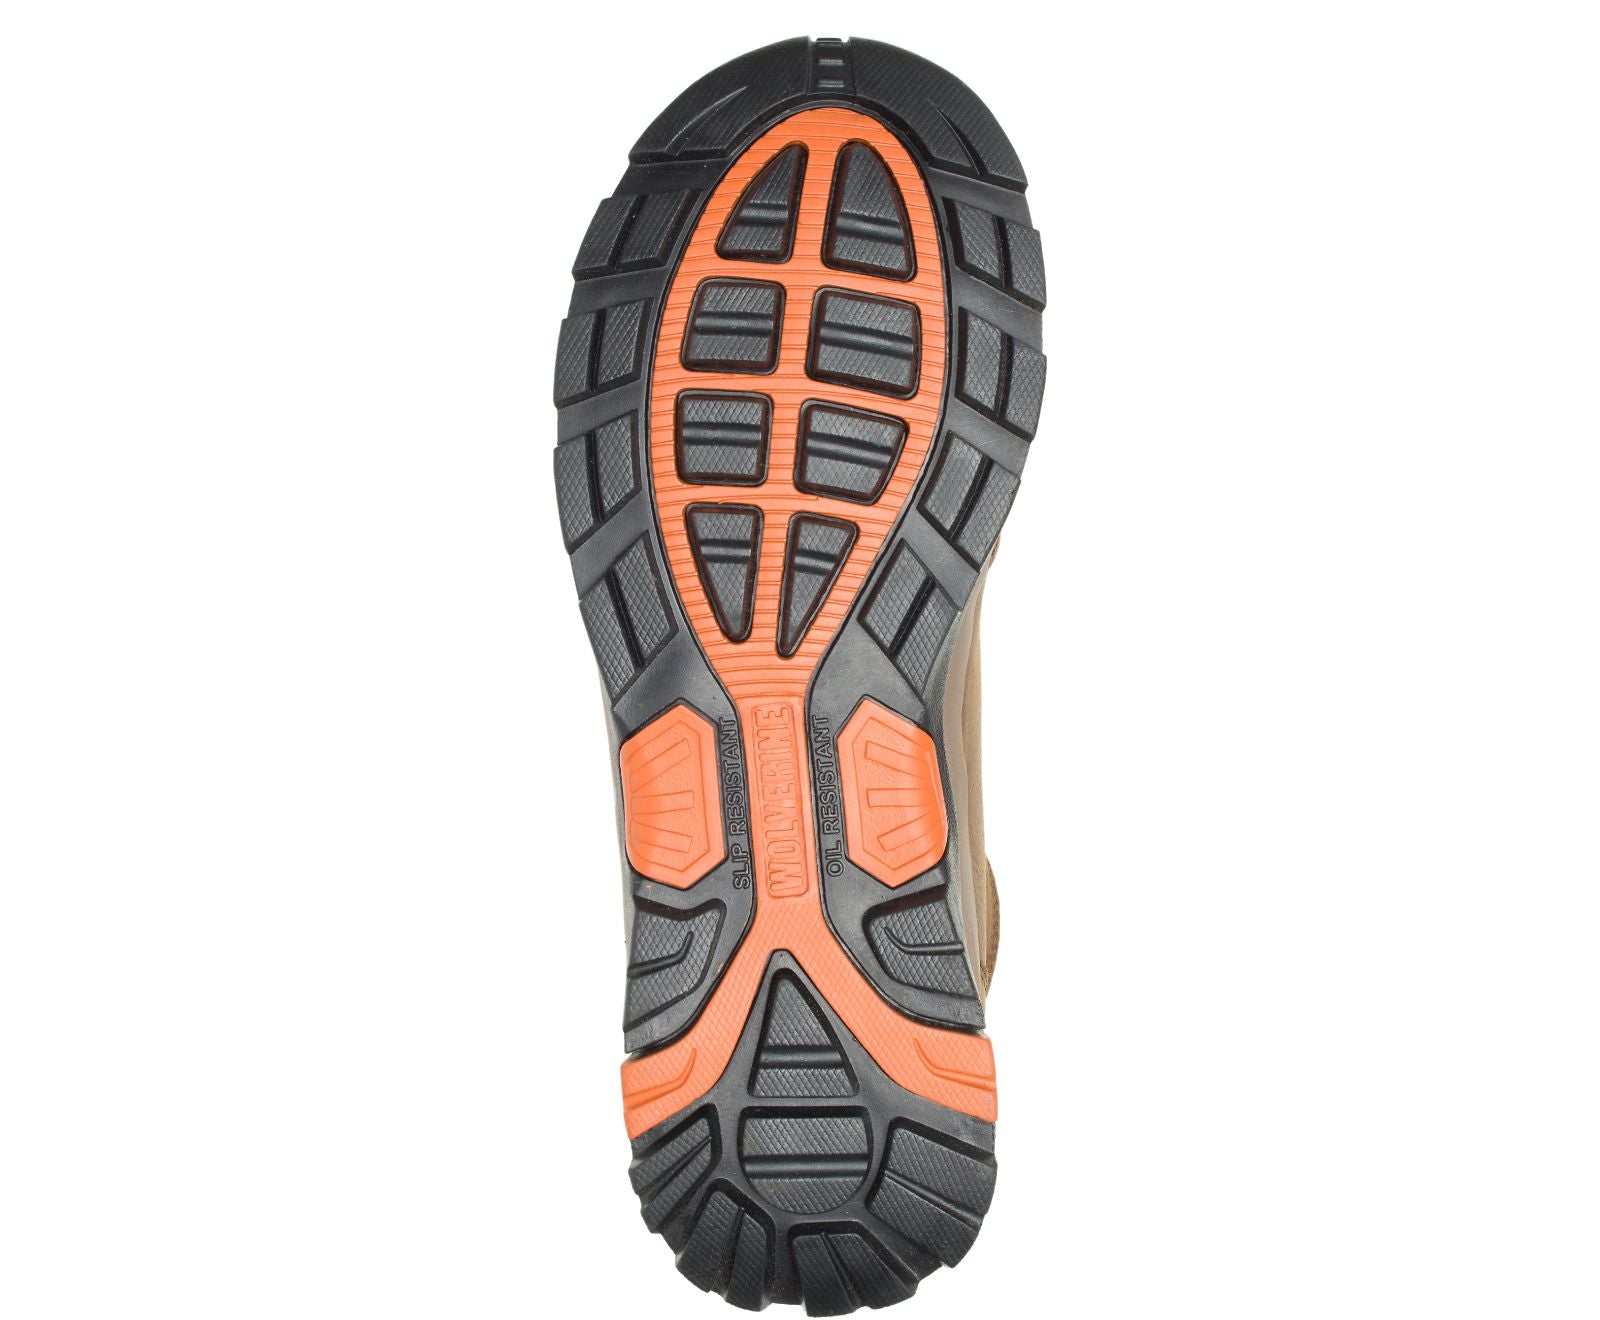 Wolverine 211043 6 Inch Brown Waterproof Steel Toe Boot (Brown)